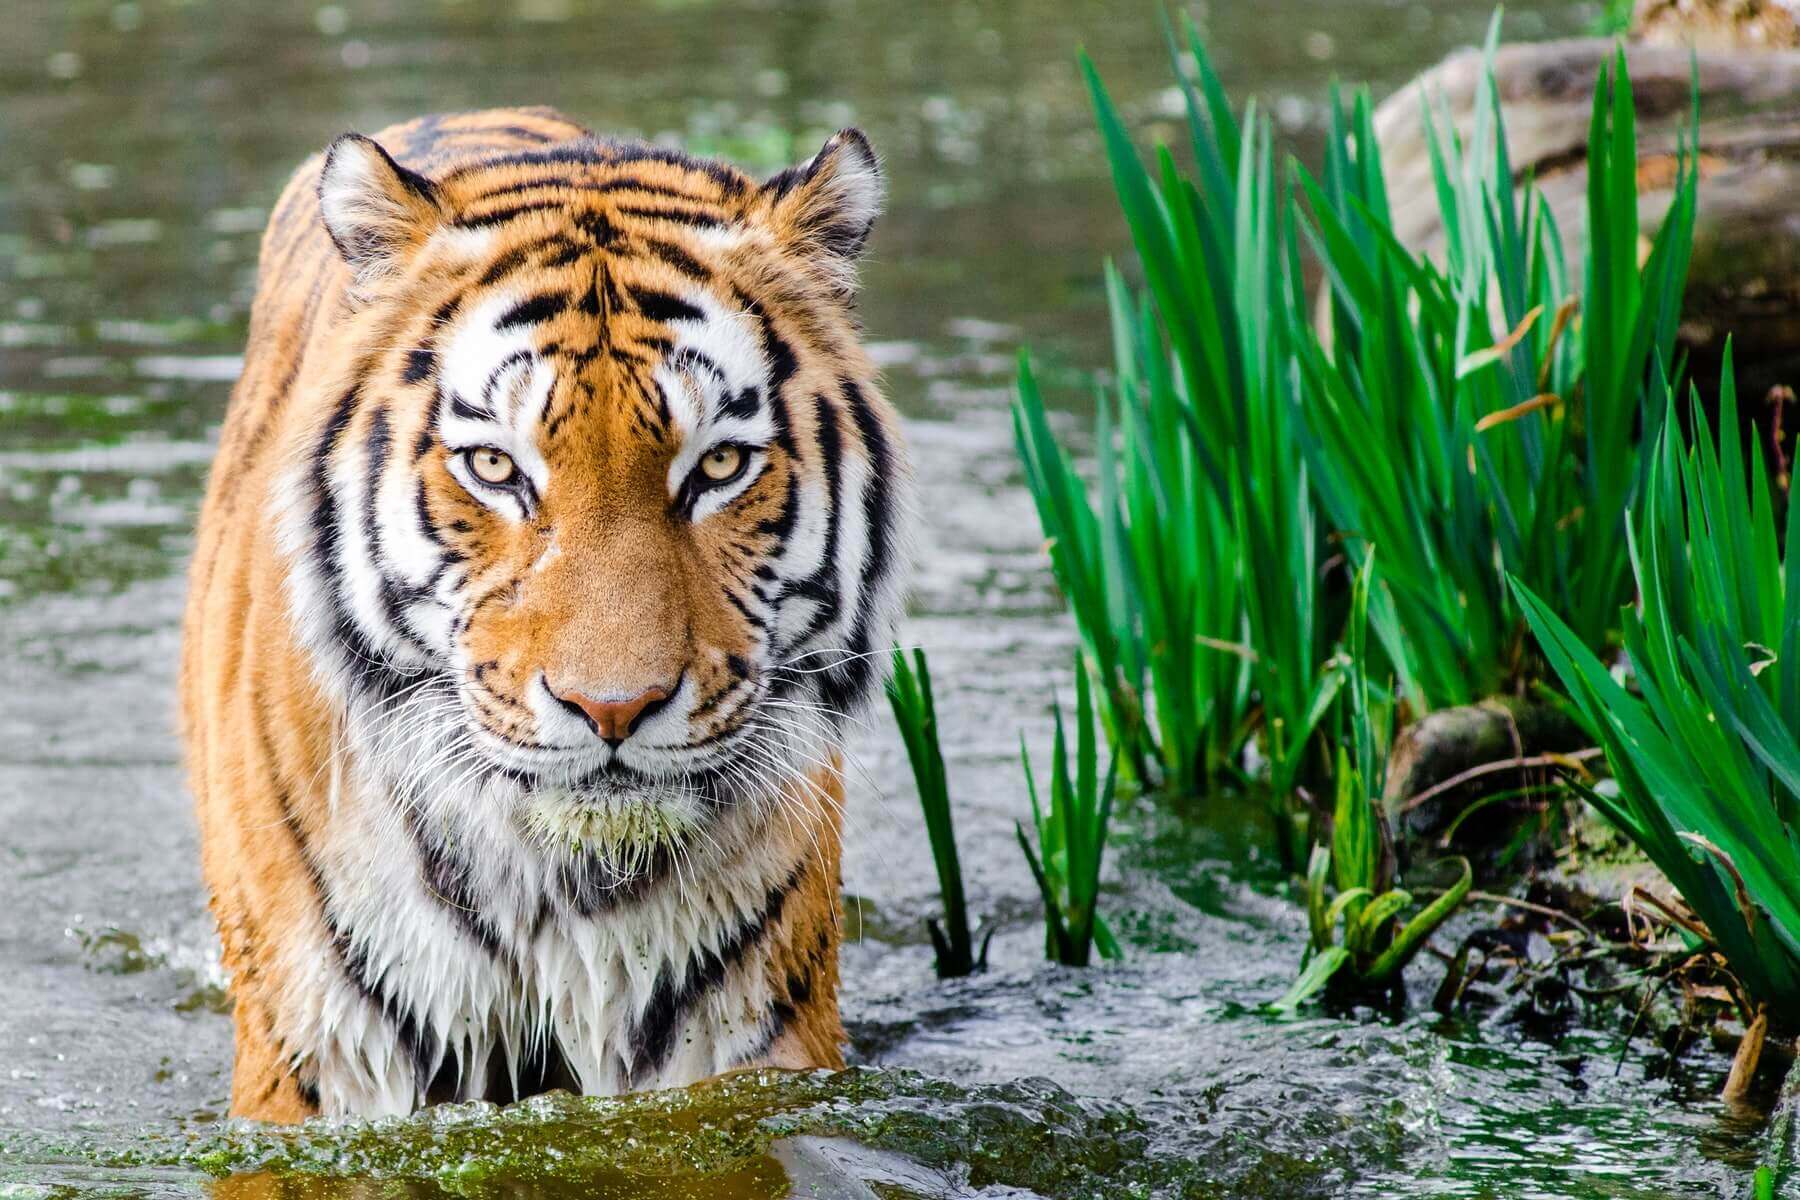 Beautiful Tiger Looks